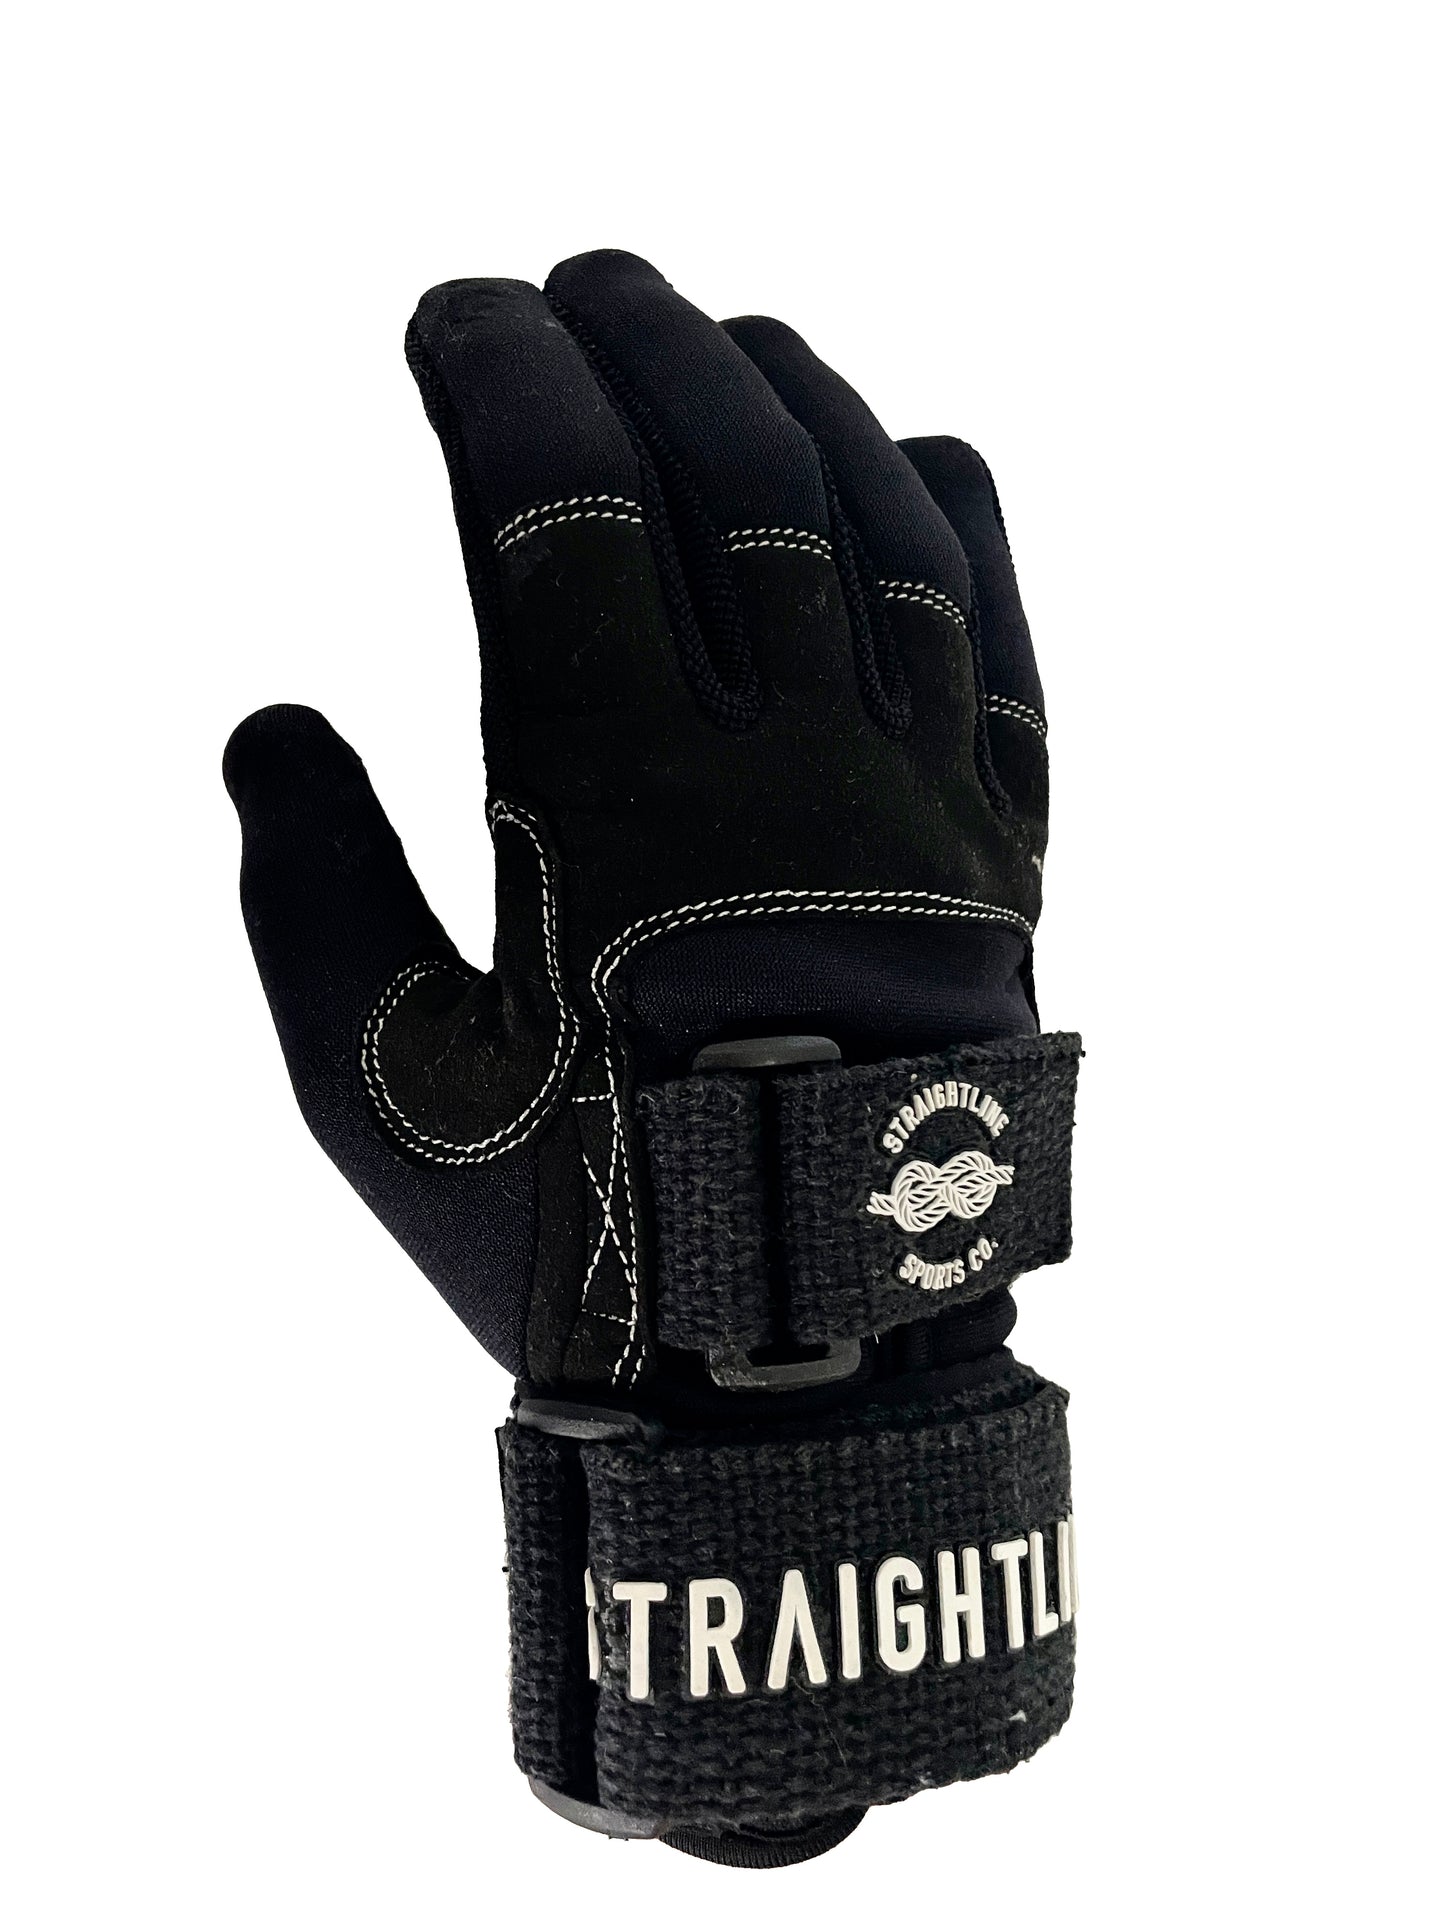 Straightline Reign Glove